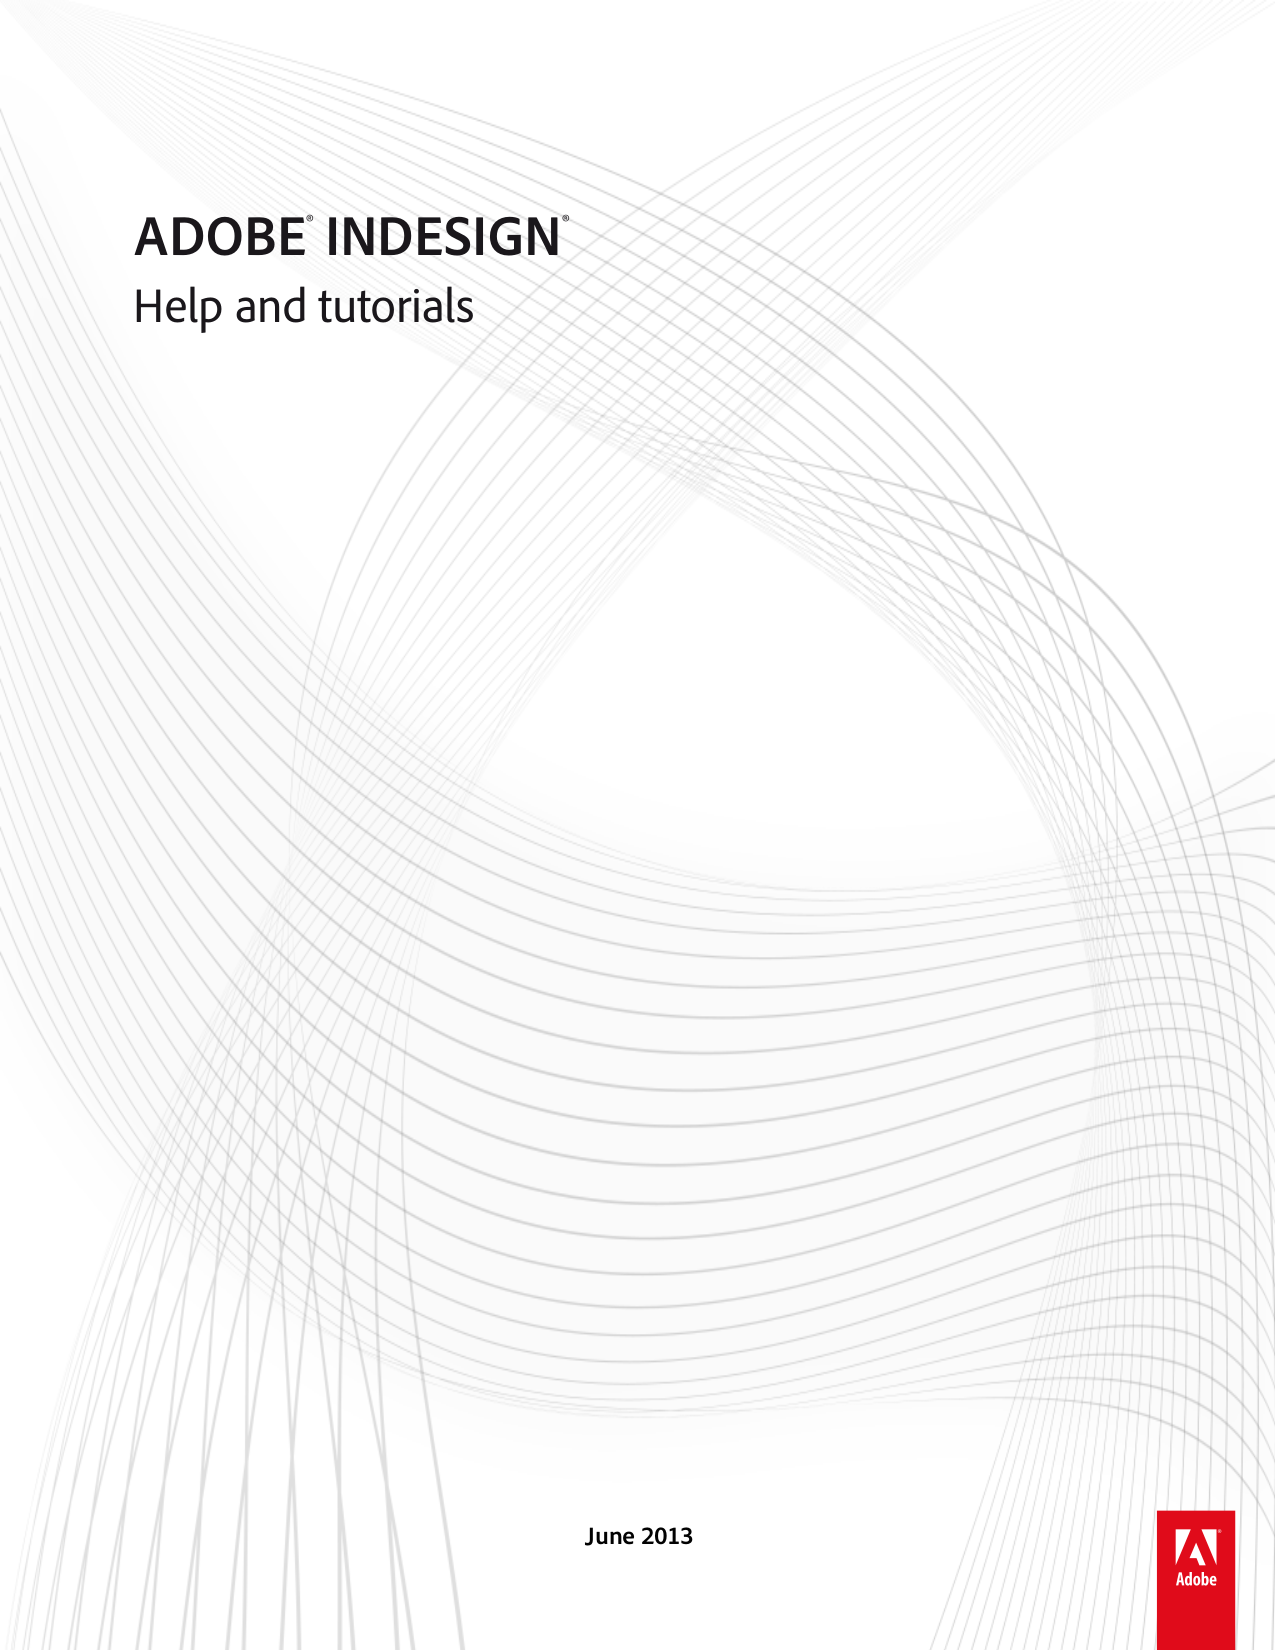 Adobe Indesign Manual Pdf